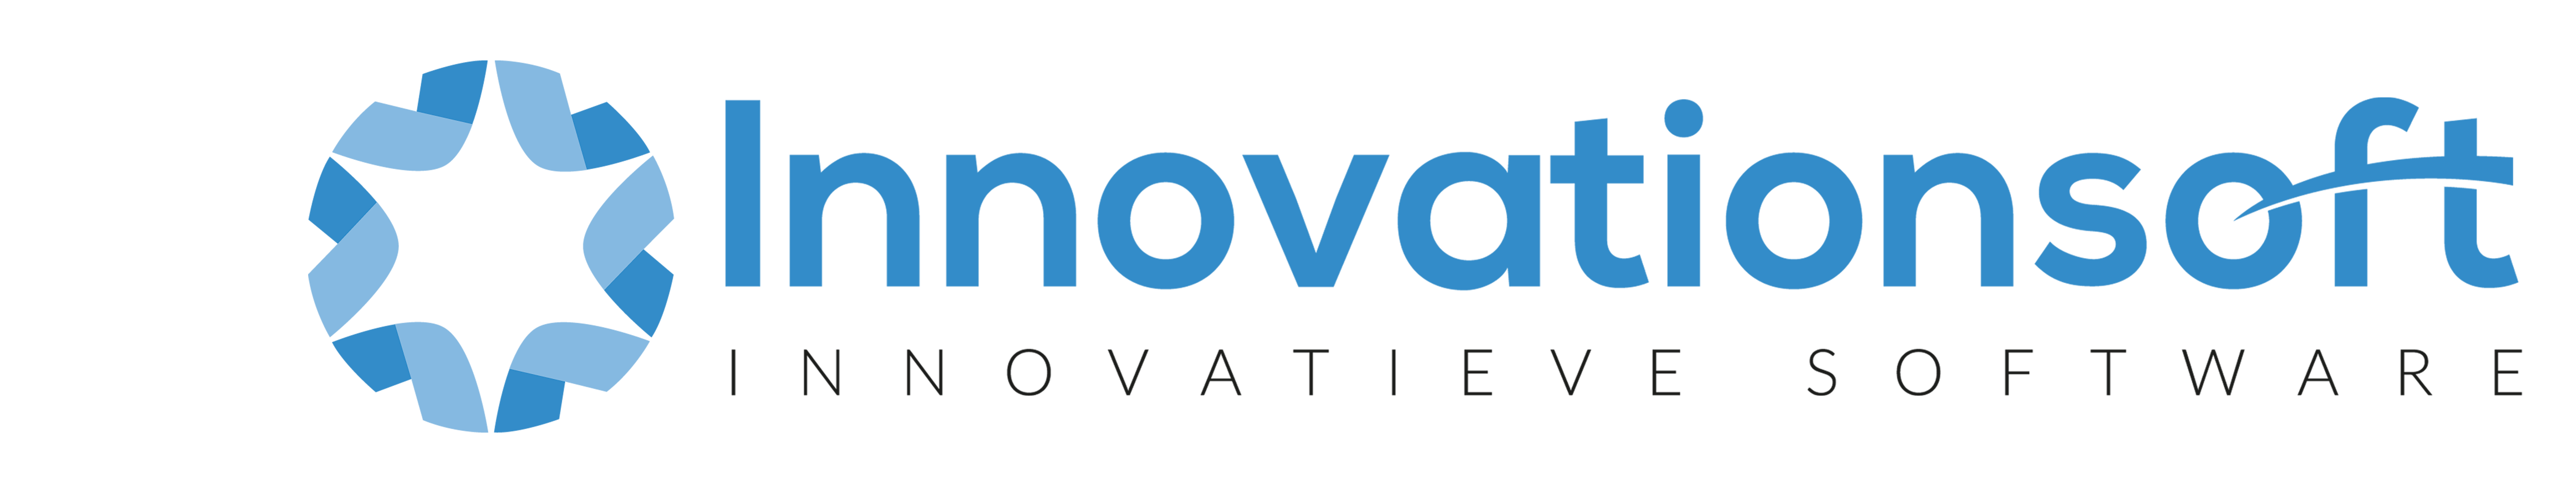 innovationsoft logo